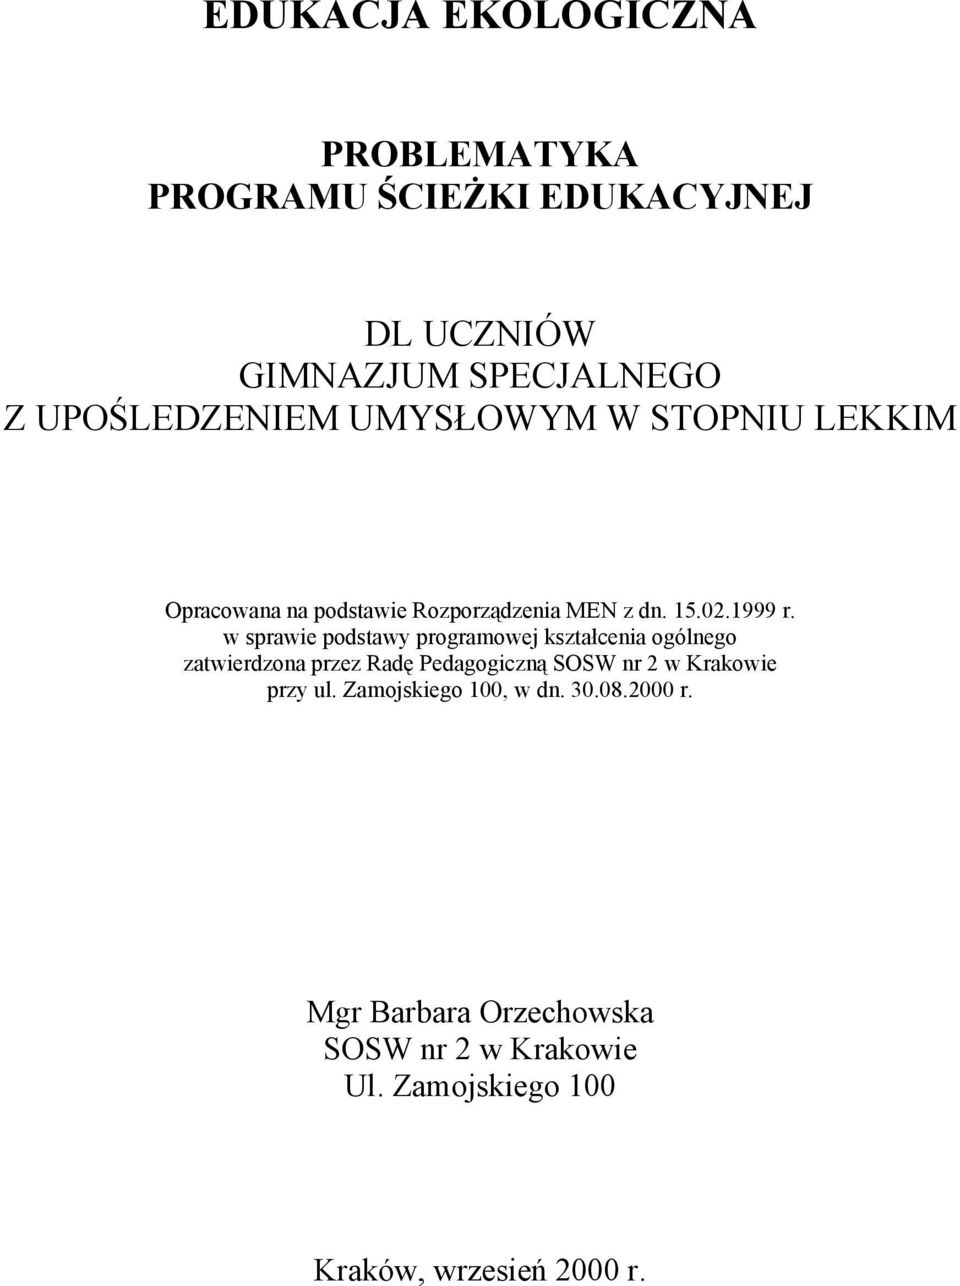 w sprawie podstawy programowej kształcenia ogólnego zatwierdzona przez Radę Pedagogiczną SOSW nr 2 w Krakowie